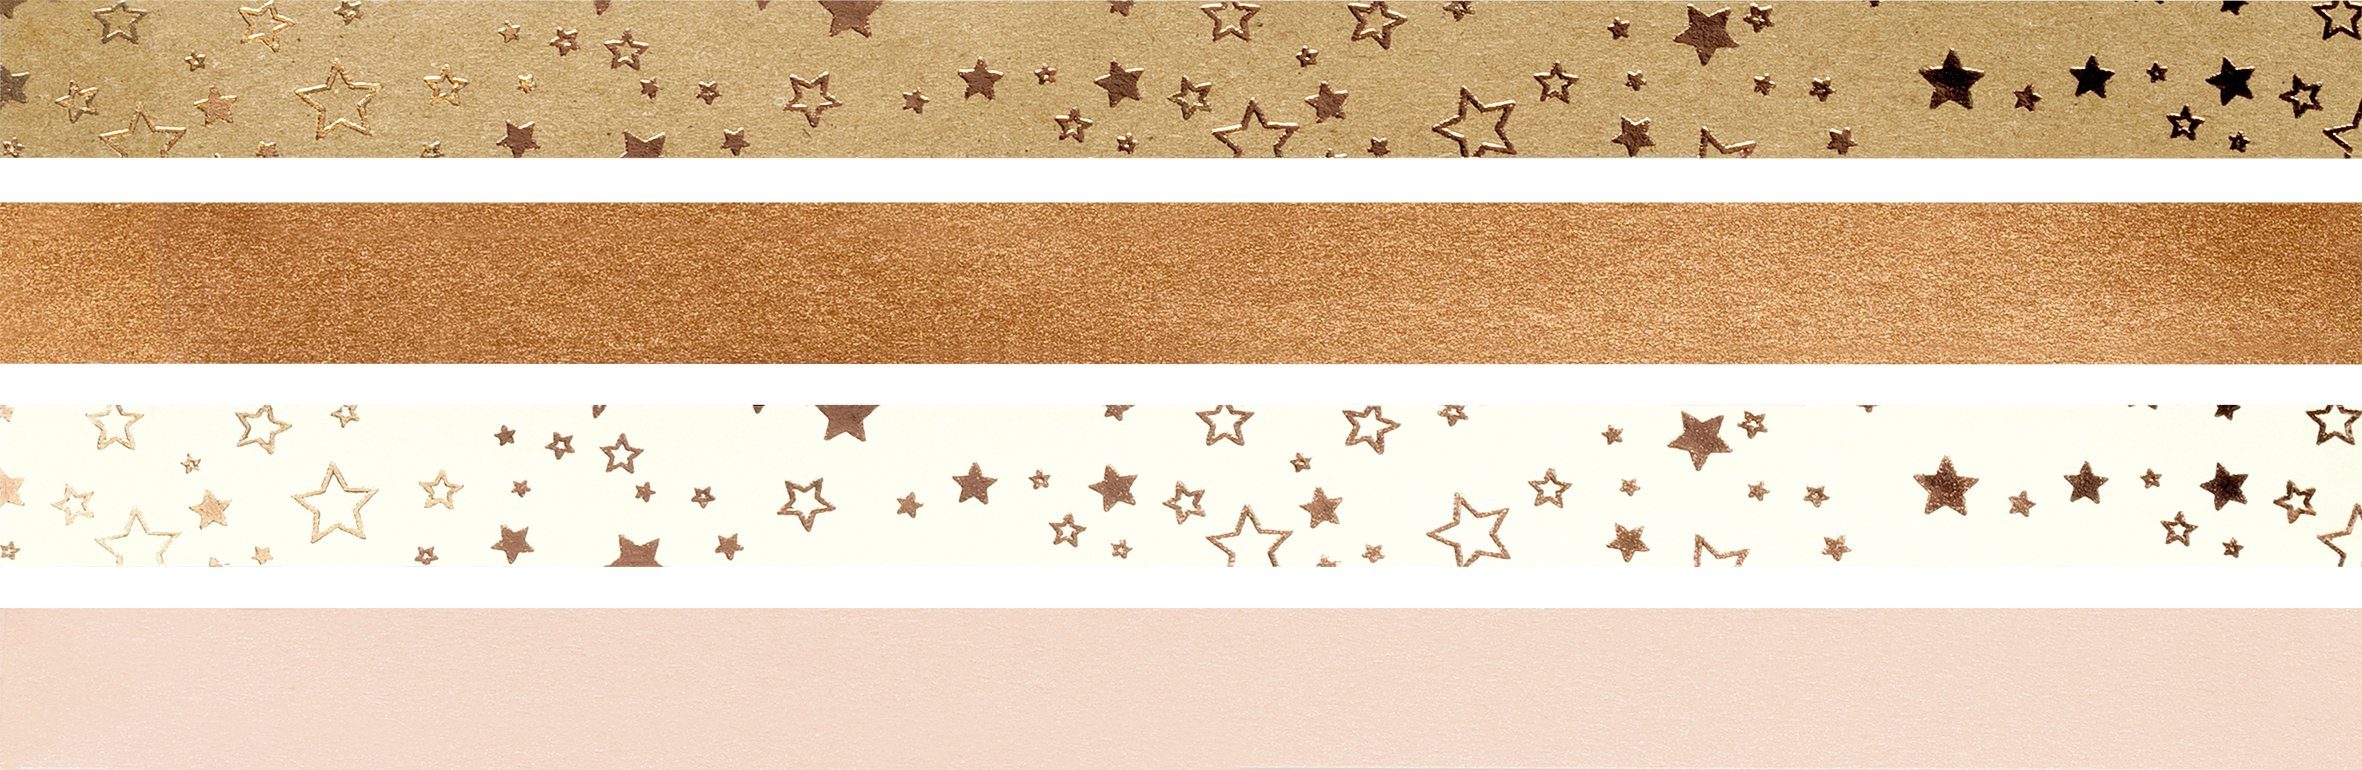 Heyda Papiersterne Fröbelsterne Stars, 96 Stück Kupfer/Natur